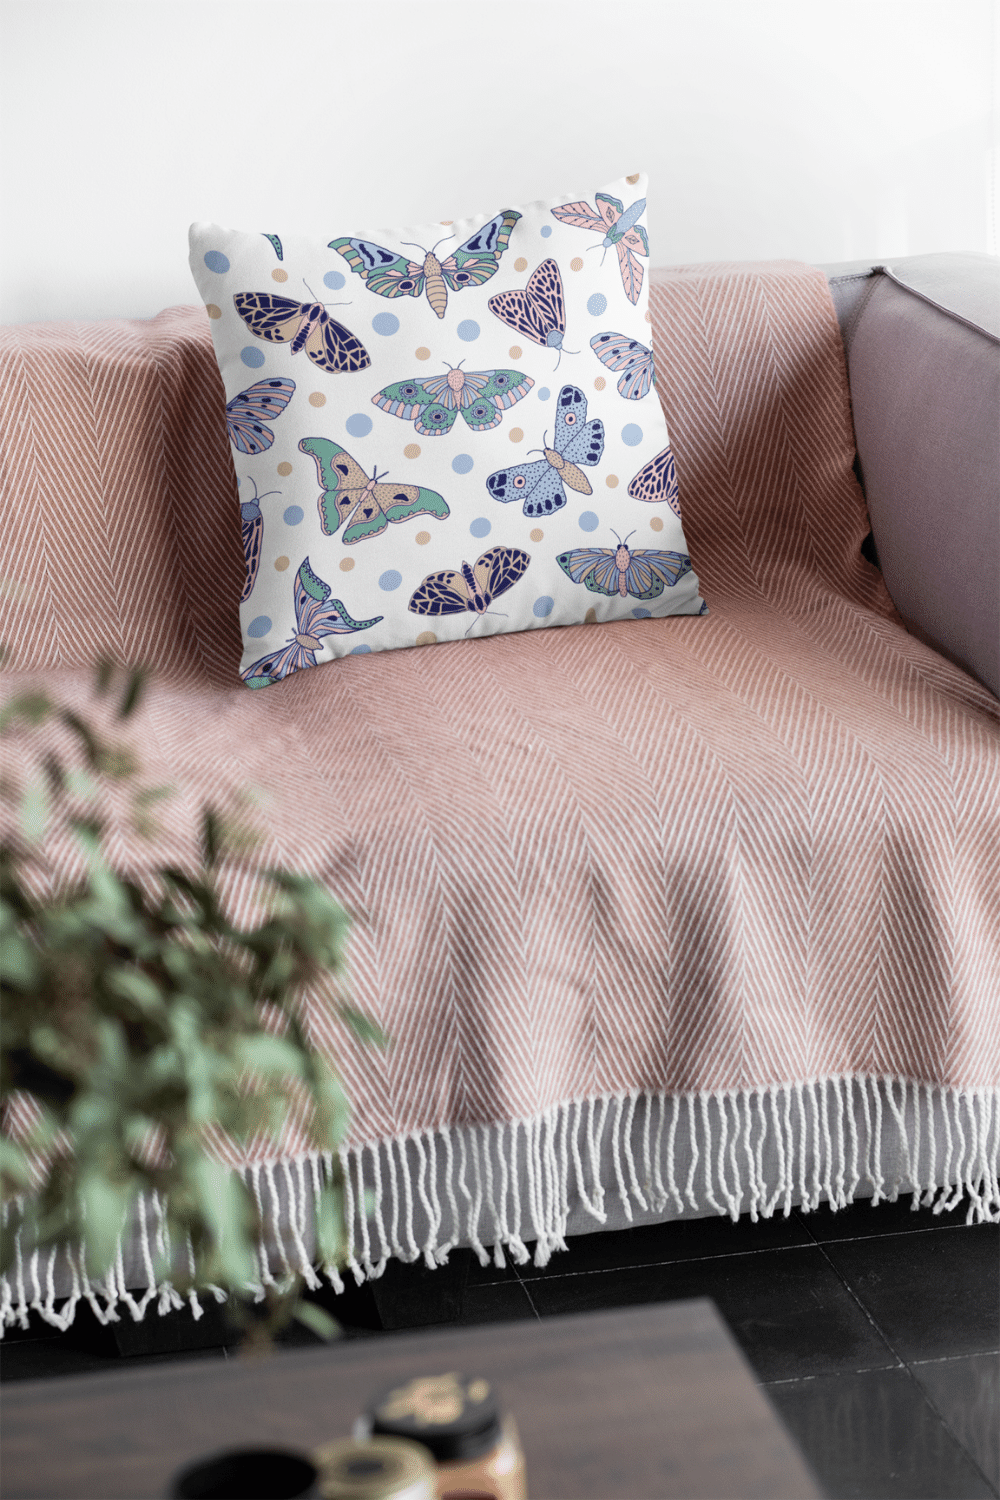 Pillows - Dorm Room Pillow - Purple Butterflies